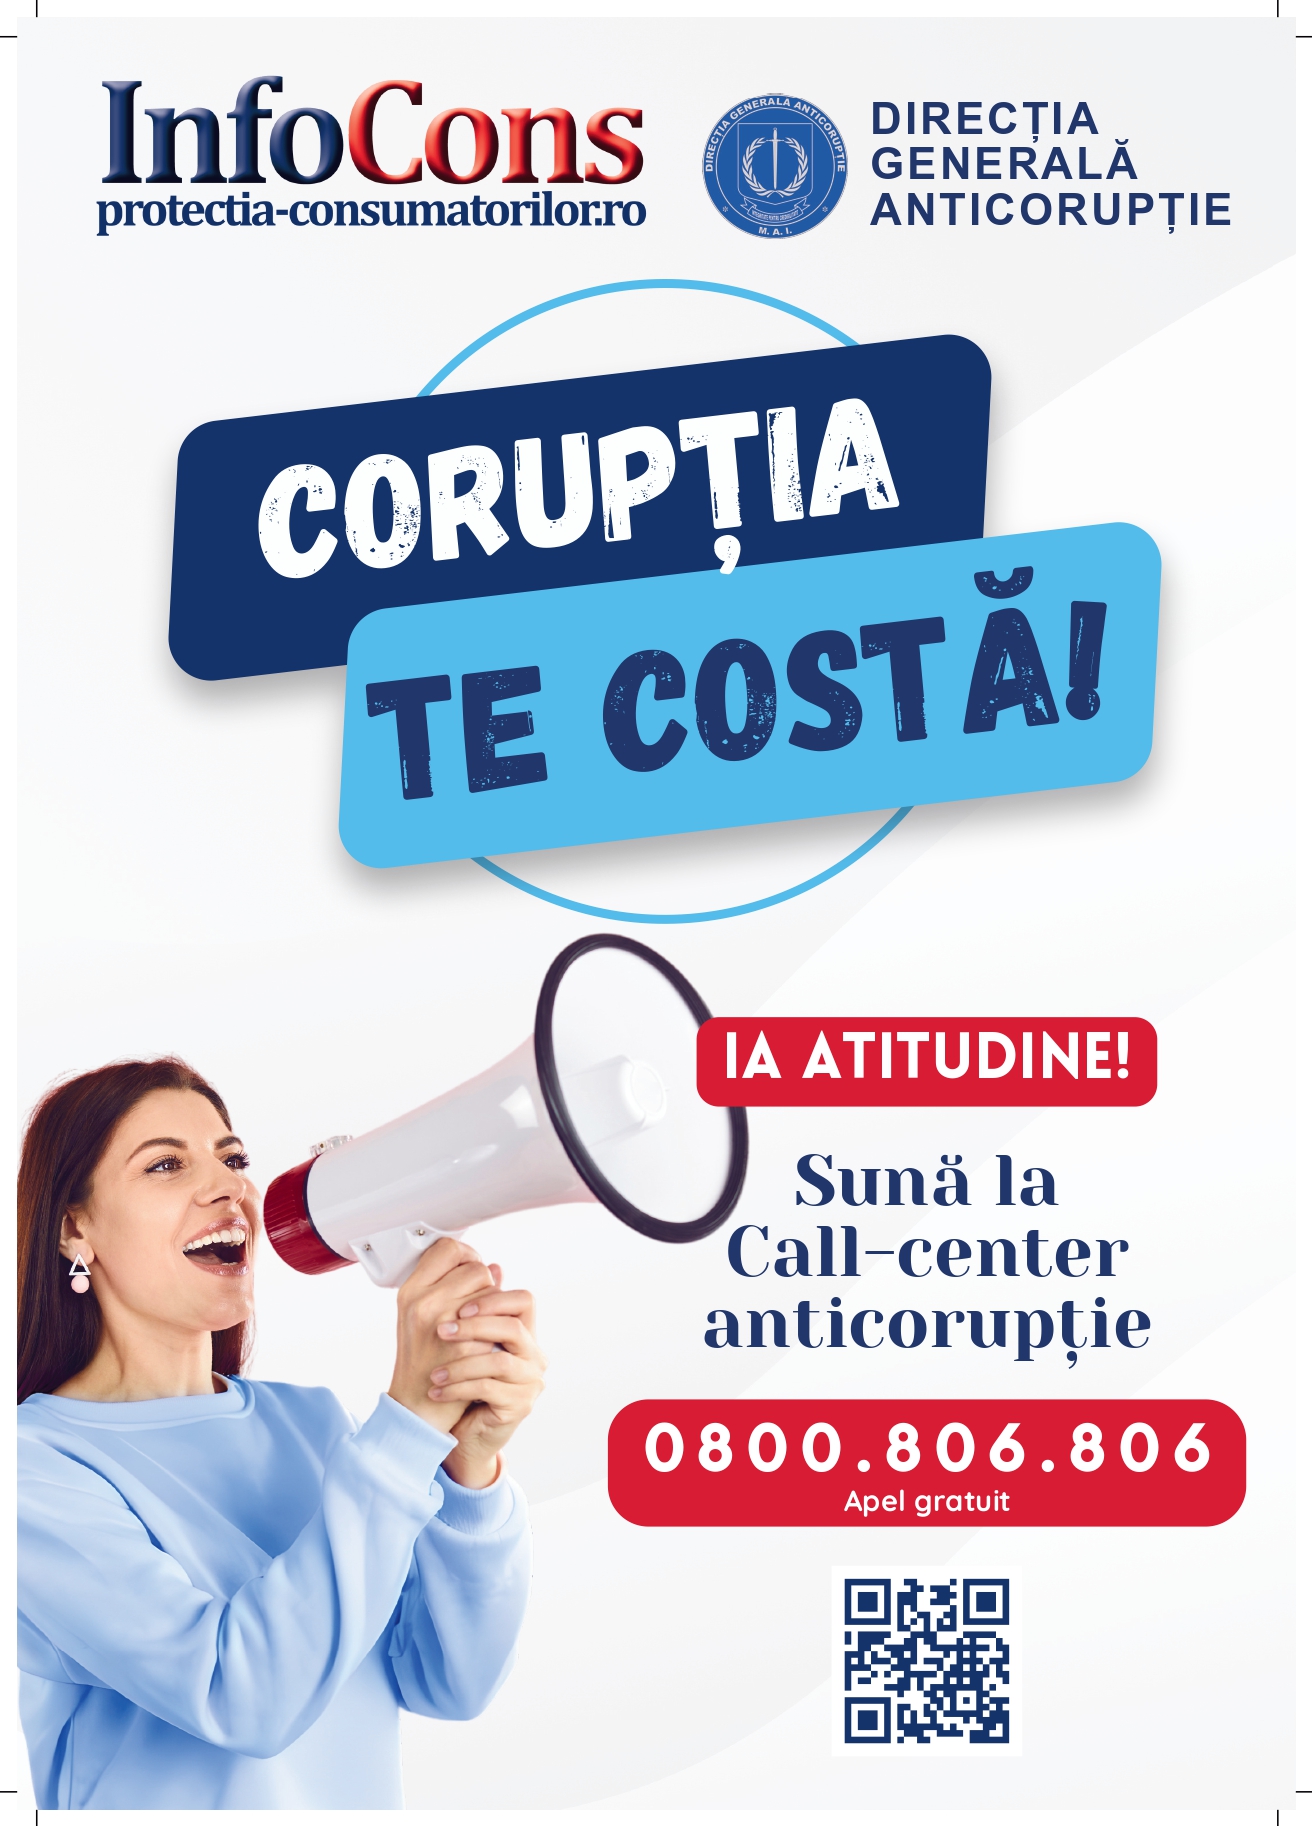 InfoCons Direcția Generală Anticorupție parteneri campania Corupția - Te costă!